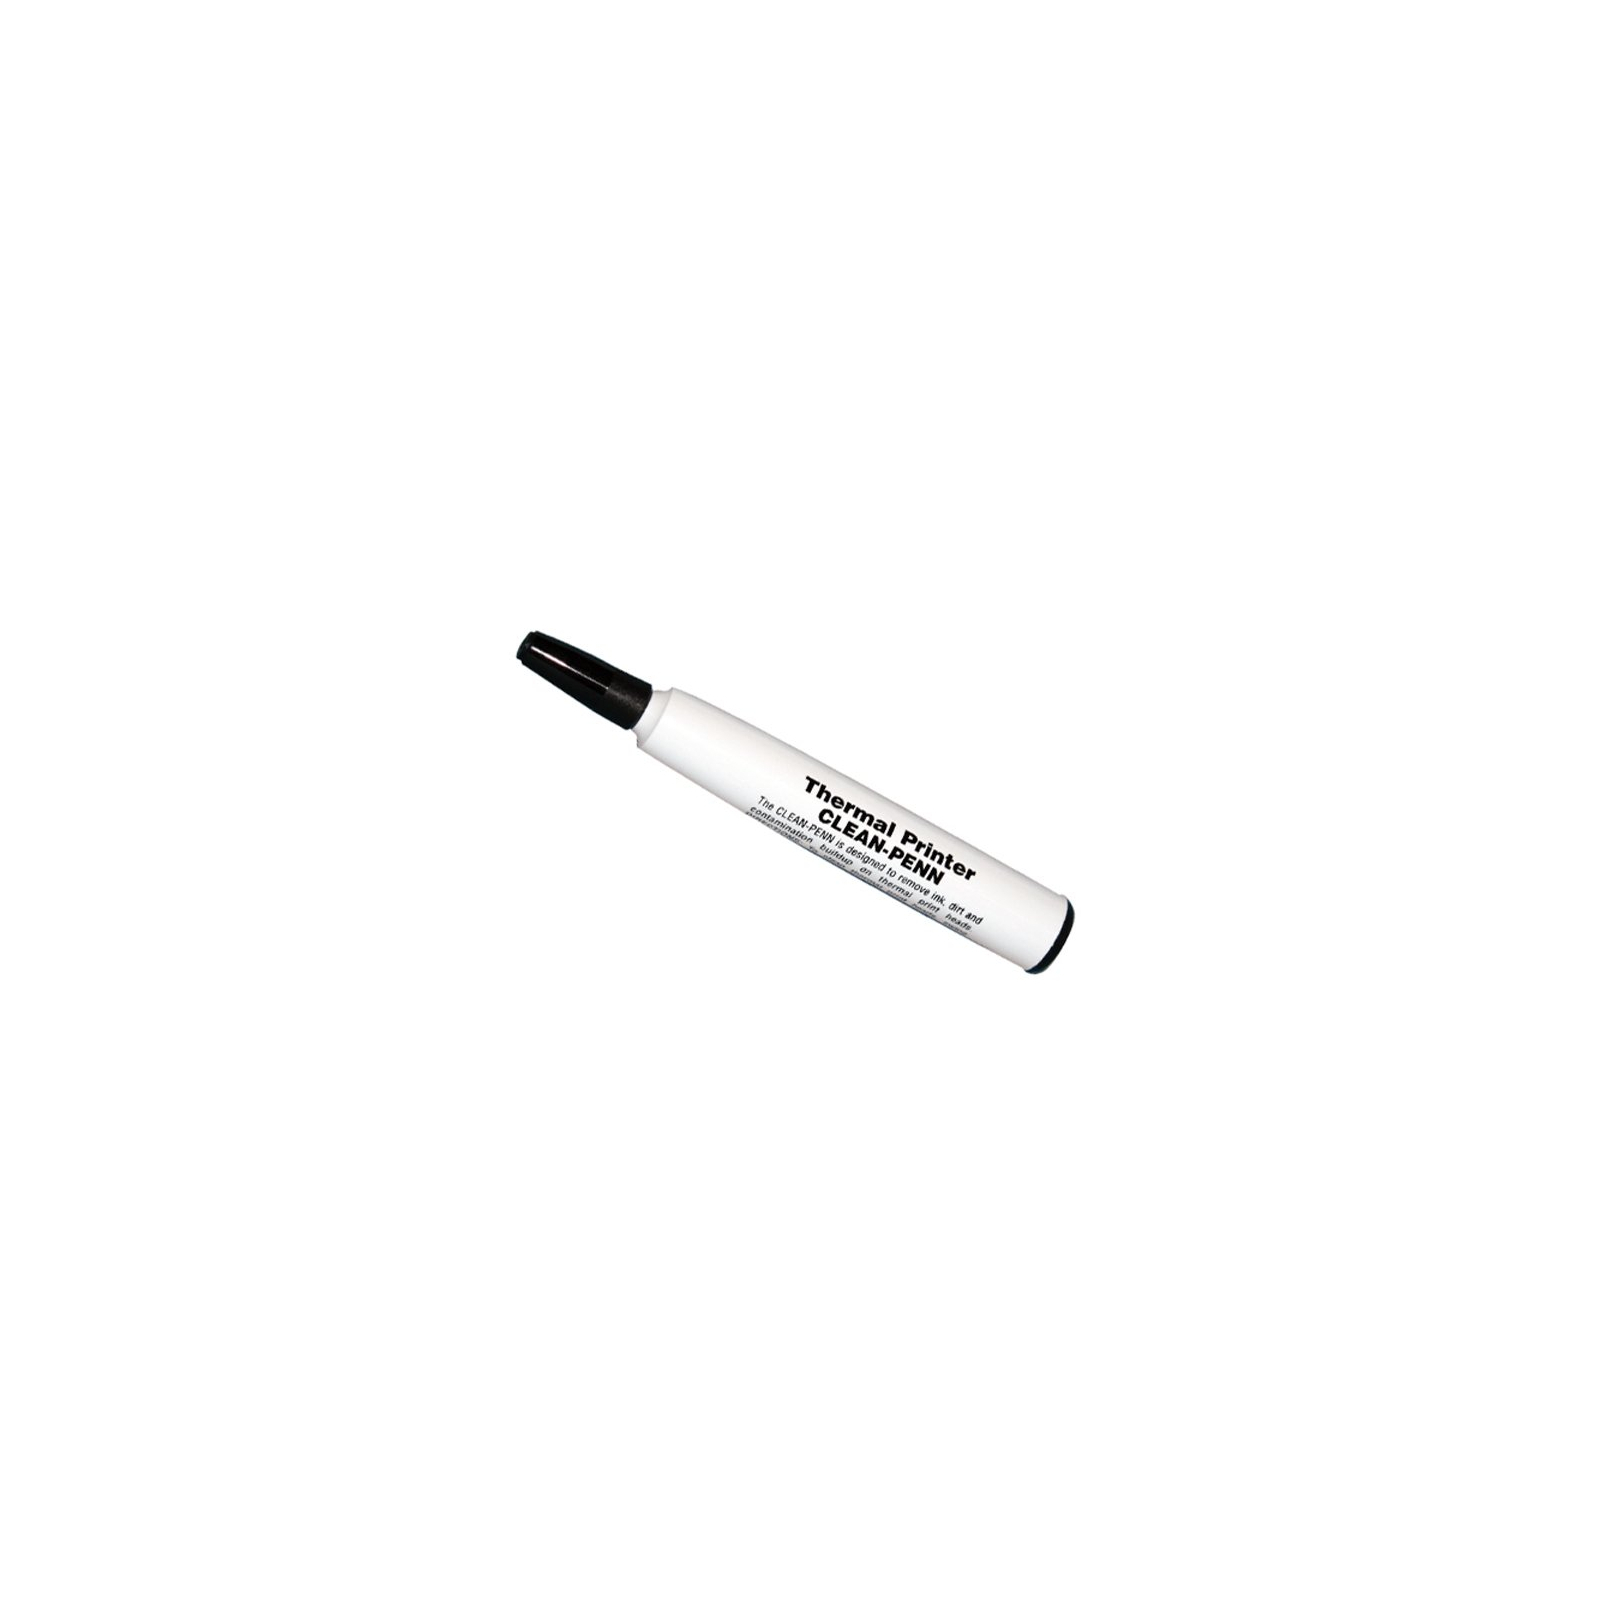 Очищуючий олівець Zebra для термоголовок, 12 шт. (105950-035)